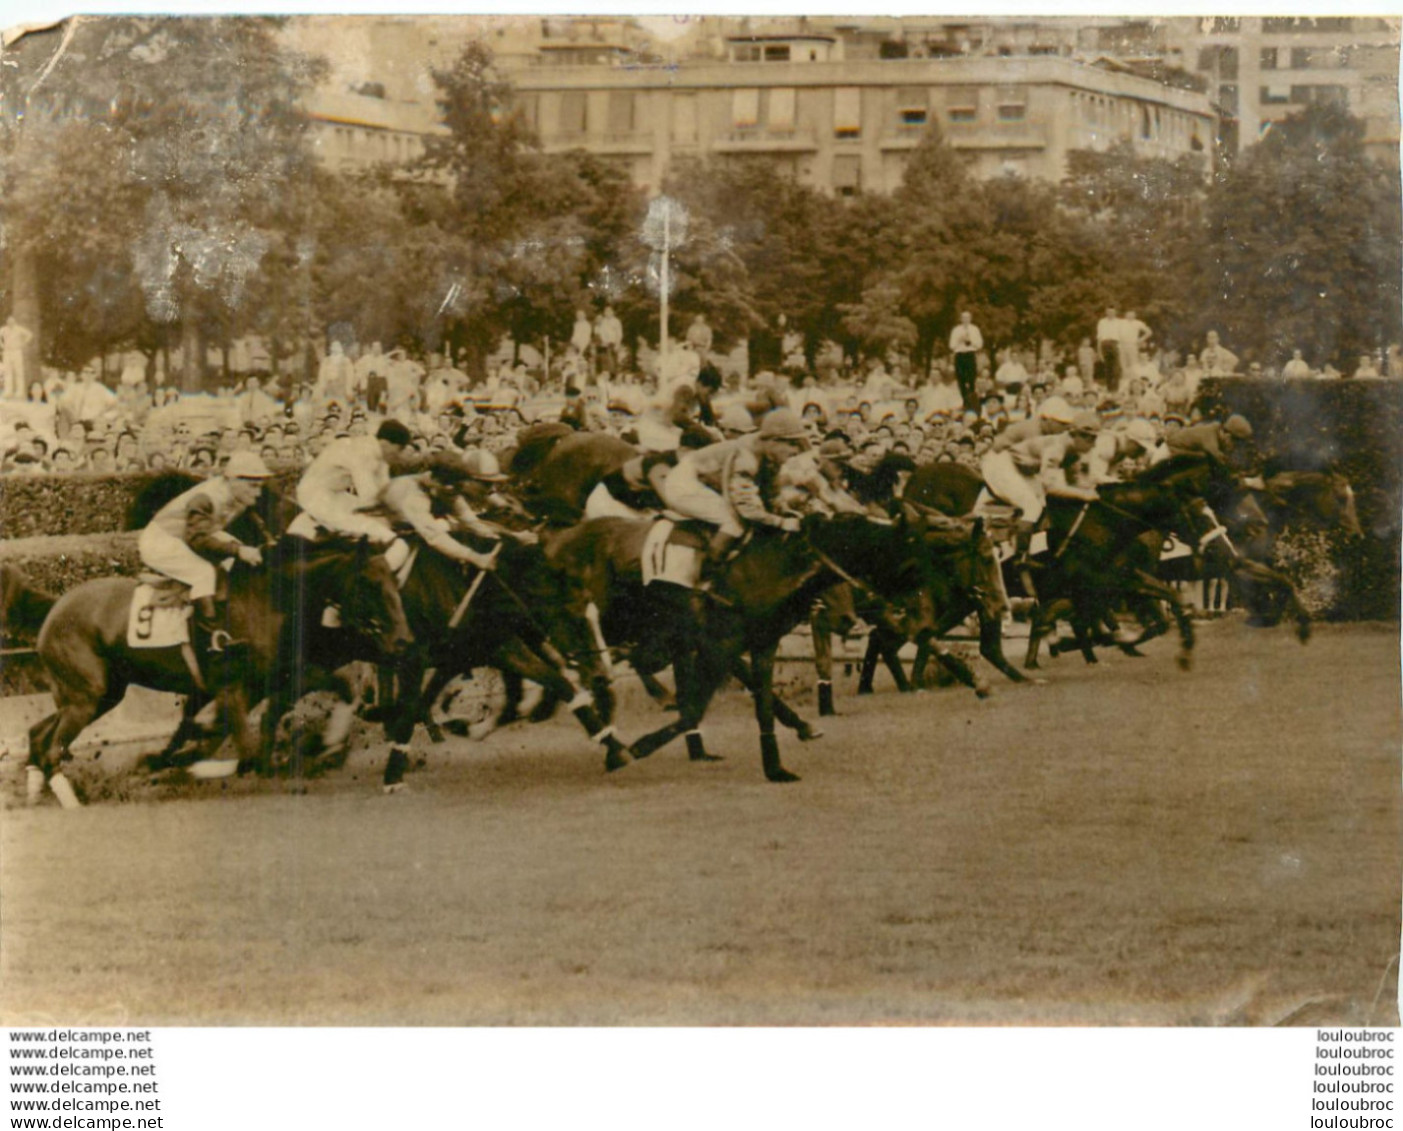 HIPPISME 06/1961 COUSIN PONS REMPORTE LE GRAND STEEPLE CHASE DE PARIS PHOTO DE PRESSE 18X13CM R3 - Sports